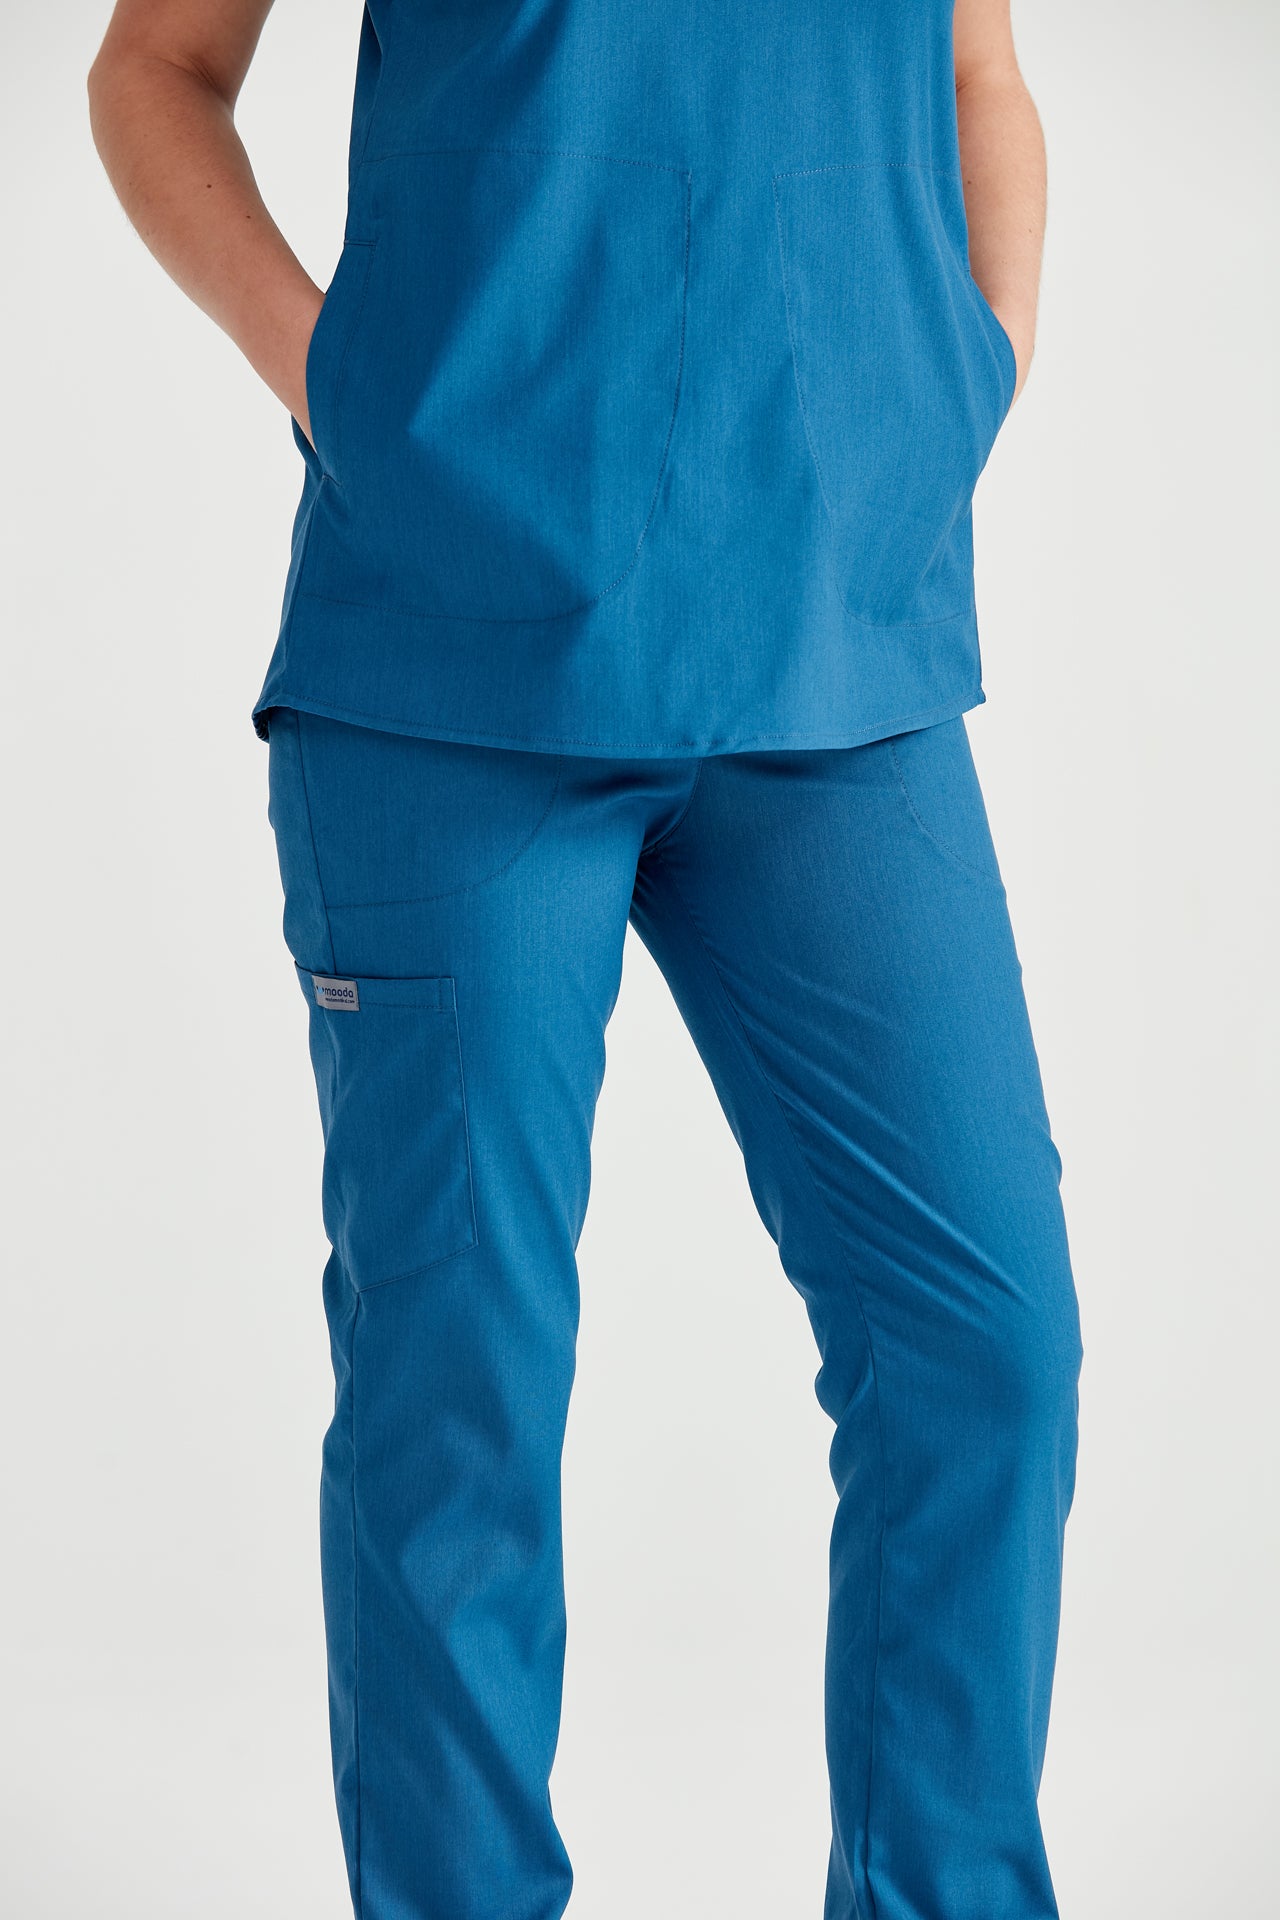 Asistenta medicala imbracata in costum medical albastru Petrol Blue, vedere din spate